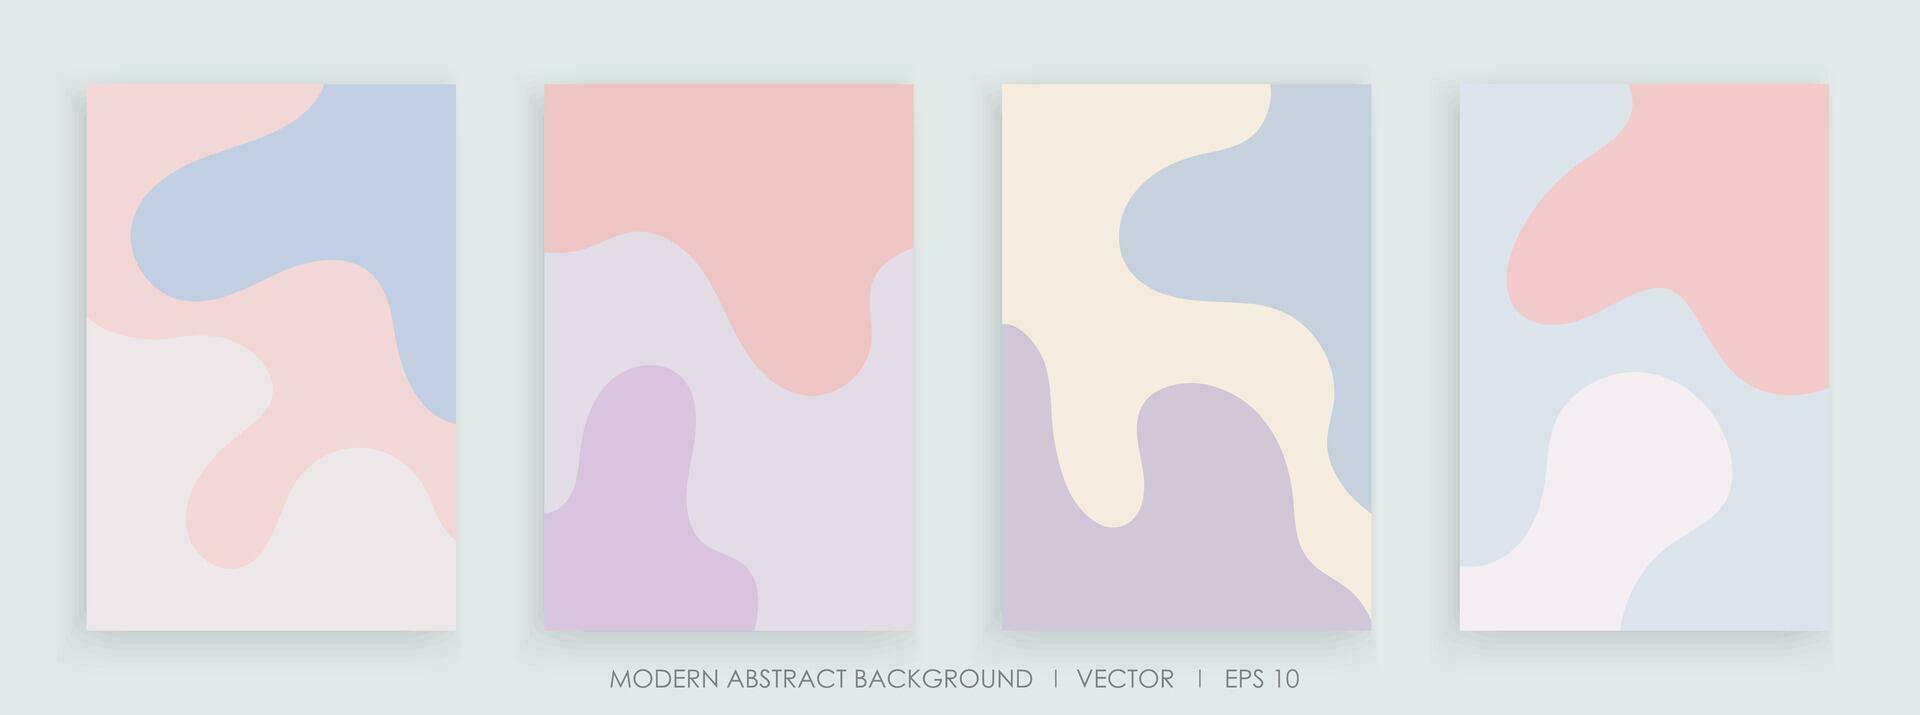 modern abstrakt kreativ Hintergründe mit wellig Formen und Linie bunt Farben Design vektor